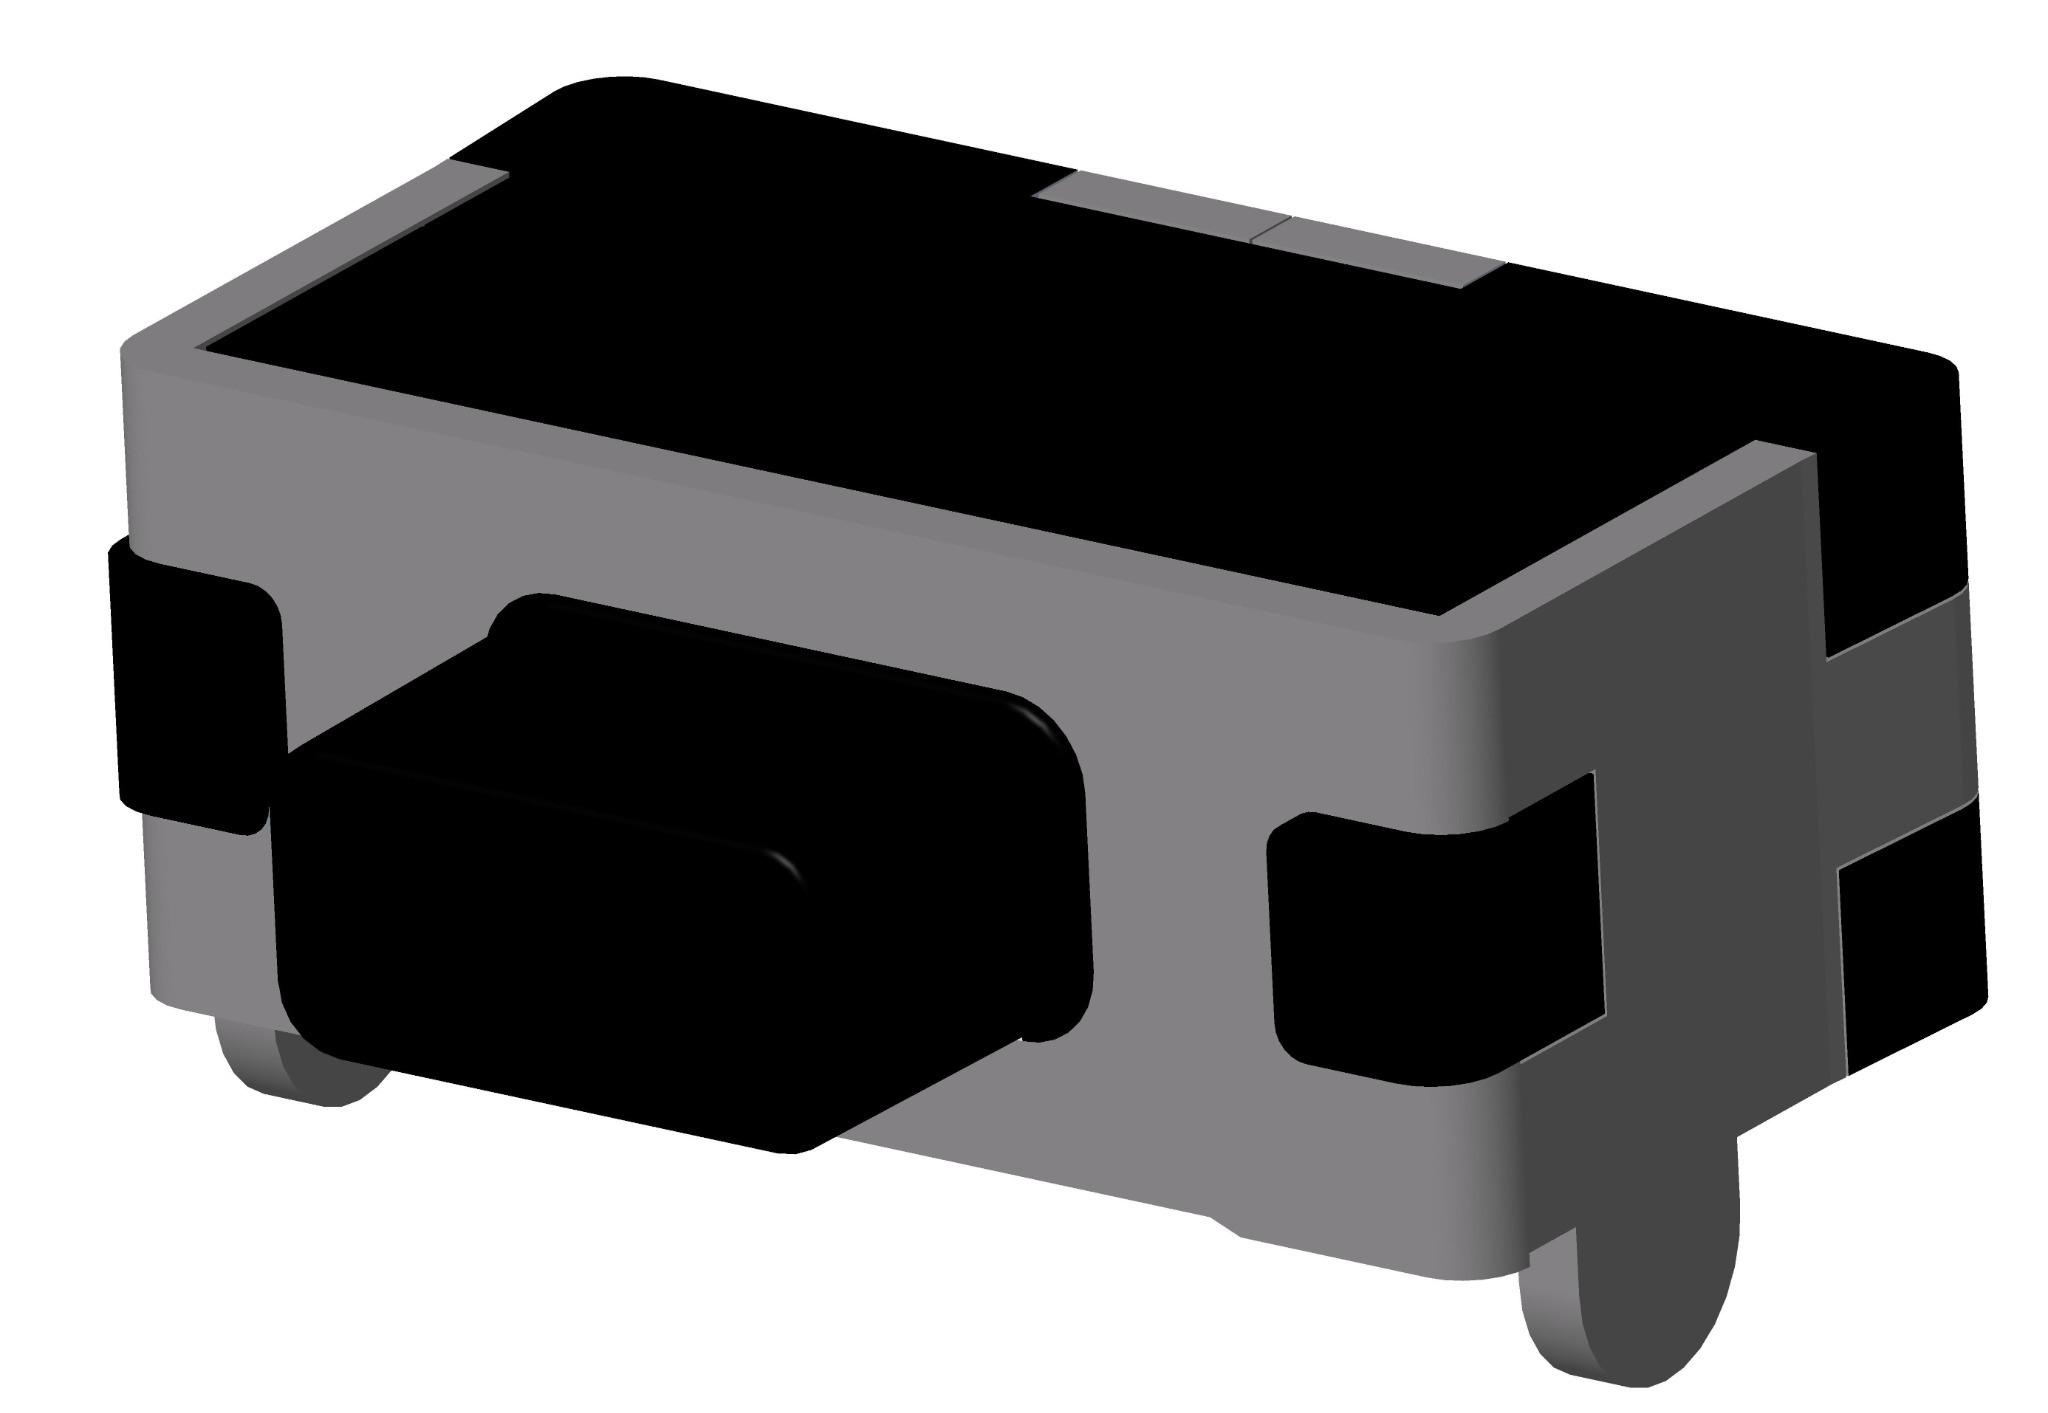 Micro SD Card Connector